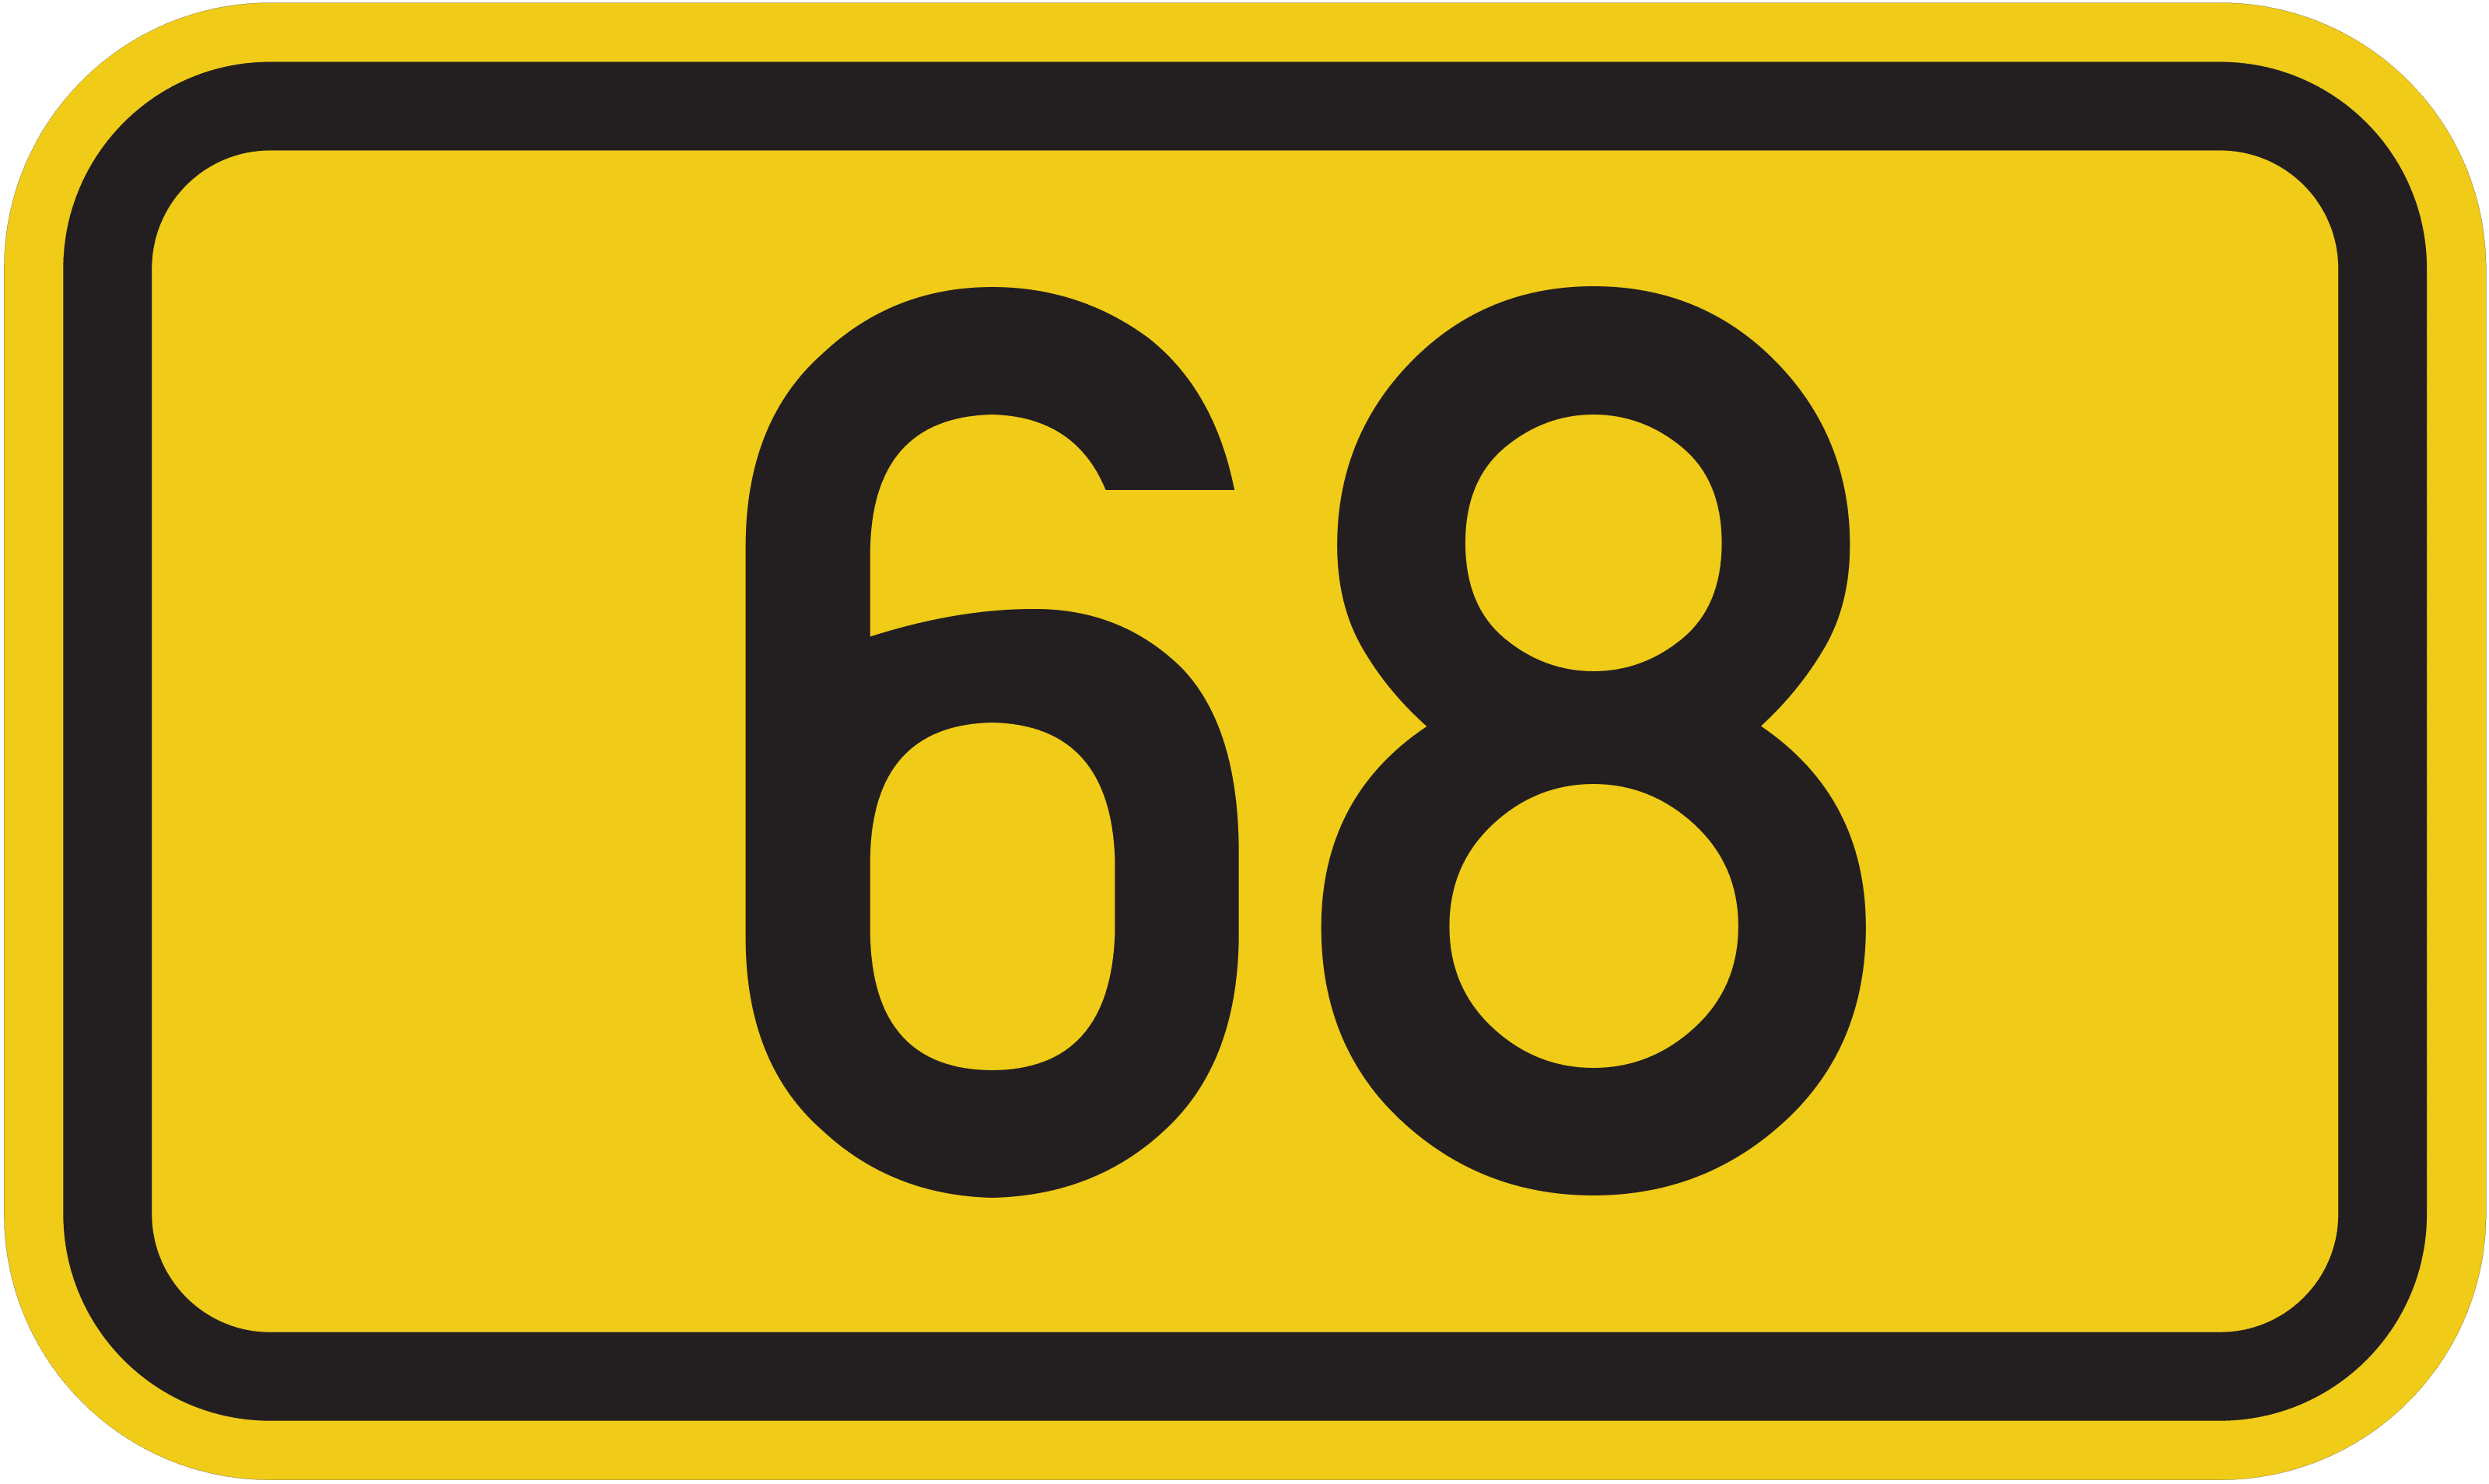 Bundesstraße B 68